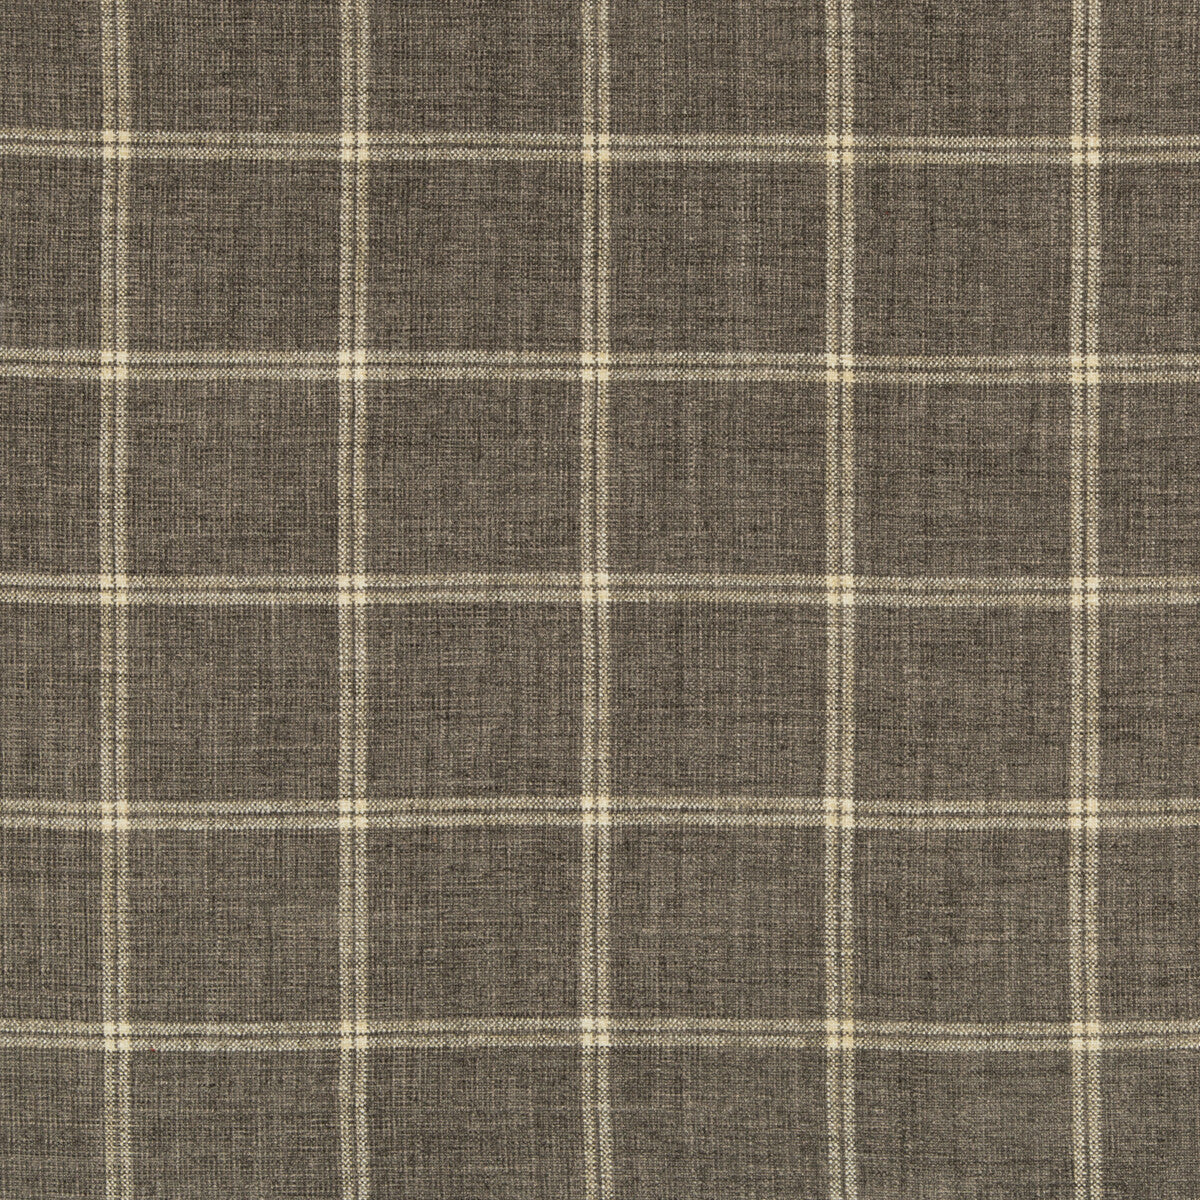 Kravet Basics fabric in 35774-11 color - pattern 35774.11.0 - by Kravet Basics